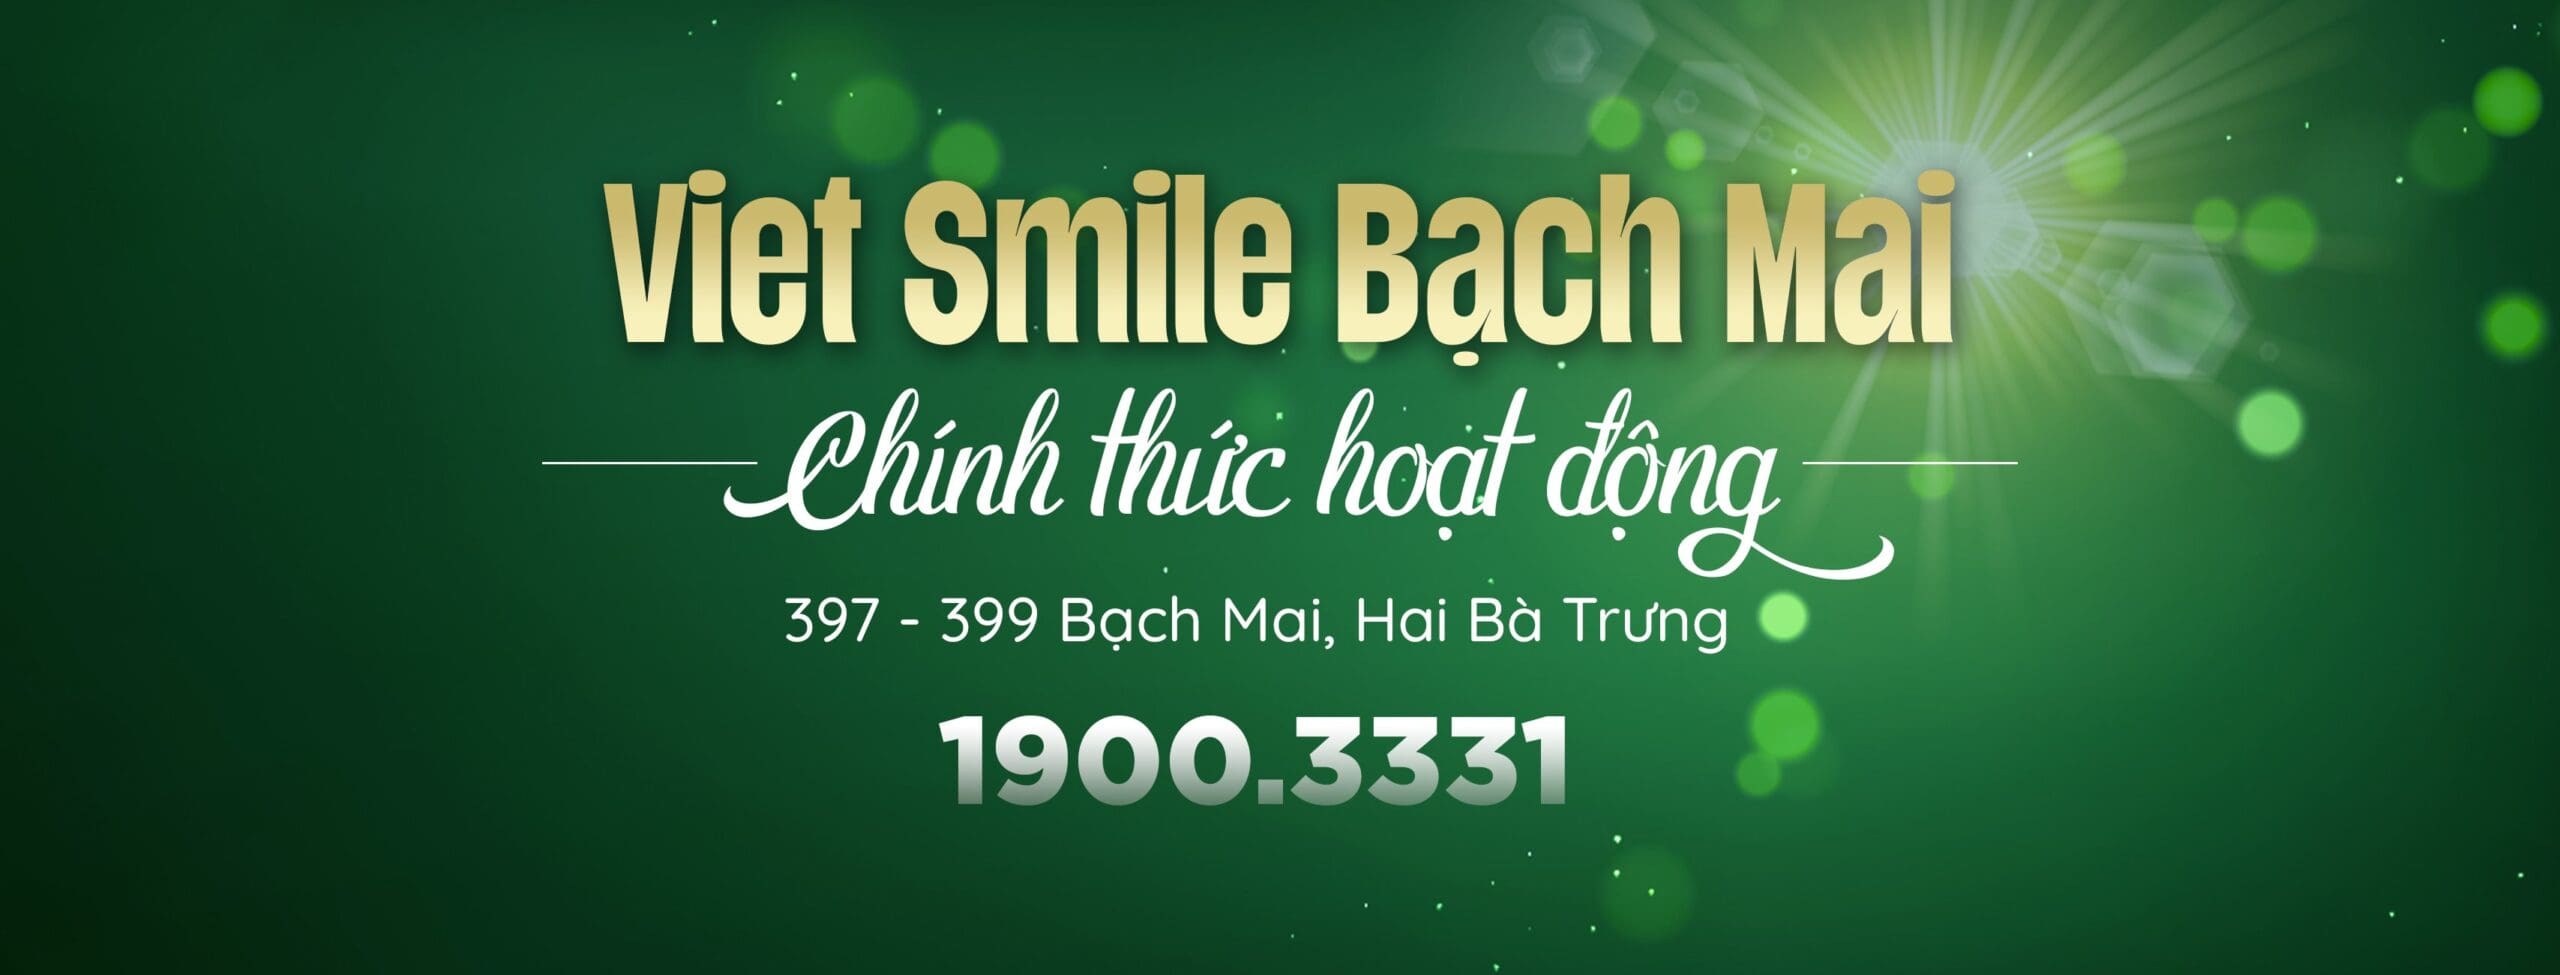 [THÔNG BÁO] Nha khoa VIET SMILE Bạch Mai chính thức hoạt động